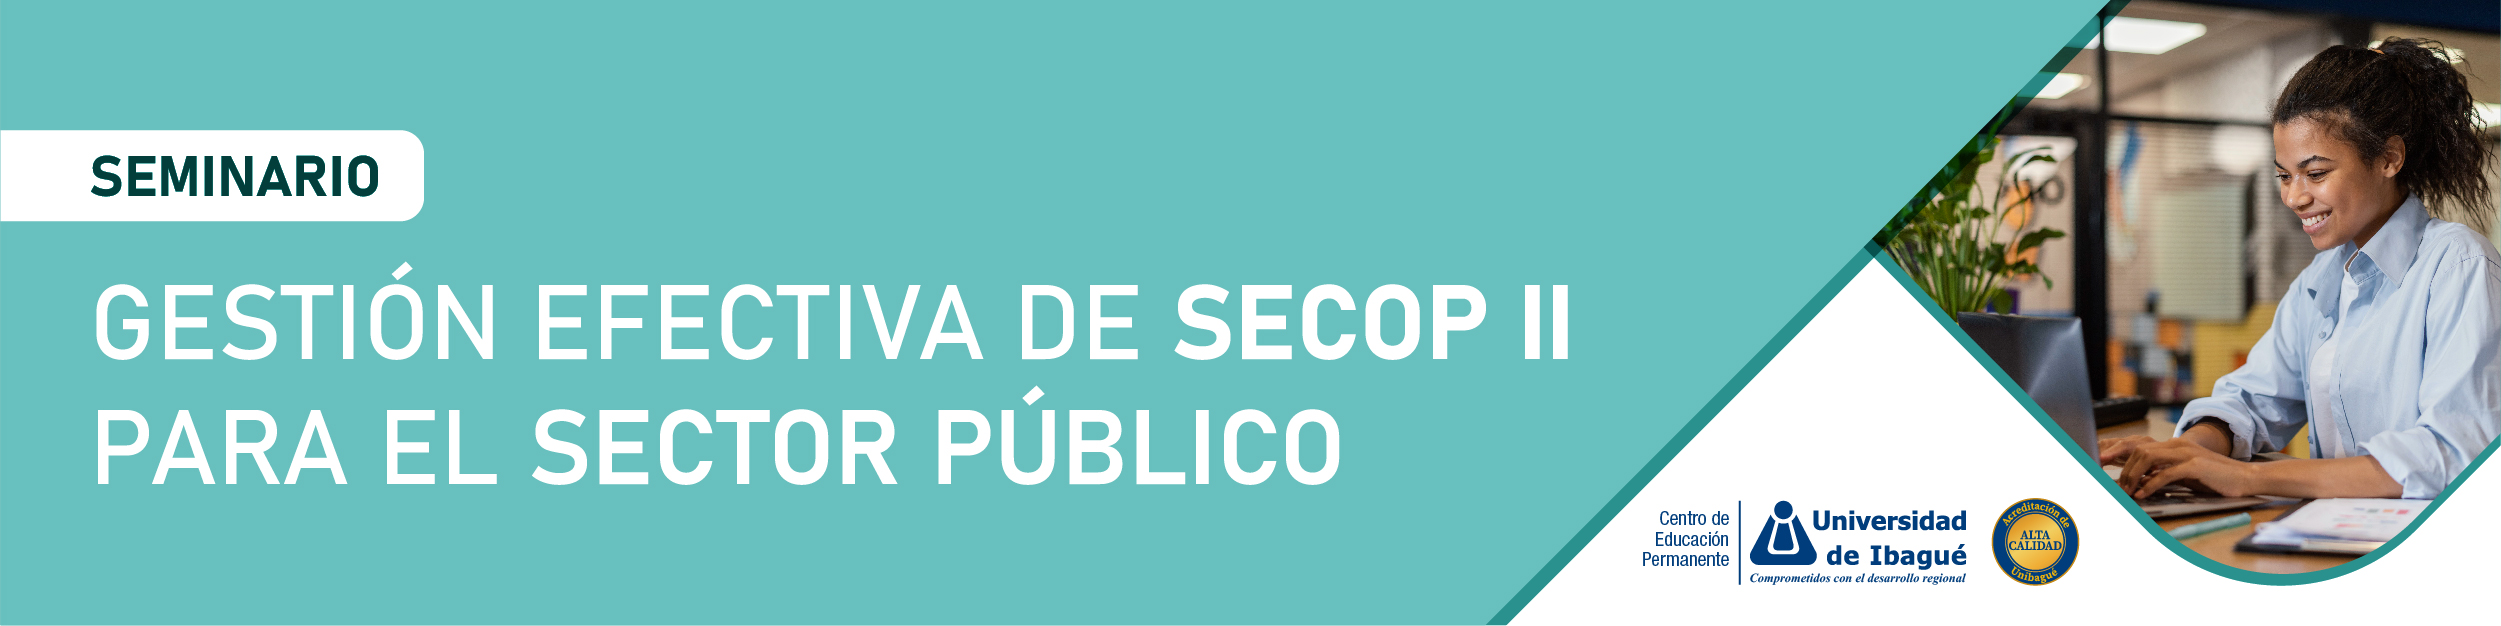 Seminario Gestión efectiva de Secop II para el sector público Unibagué